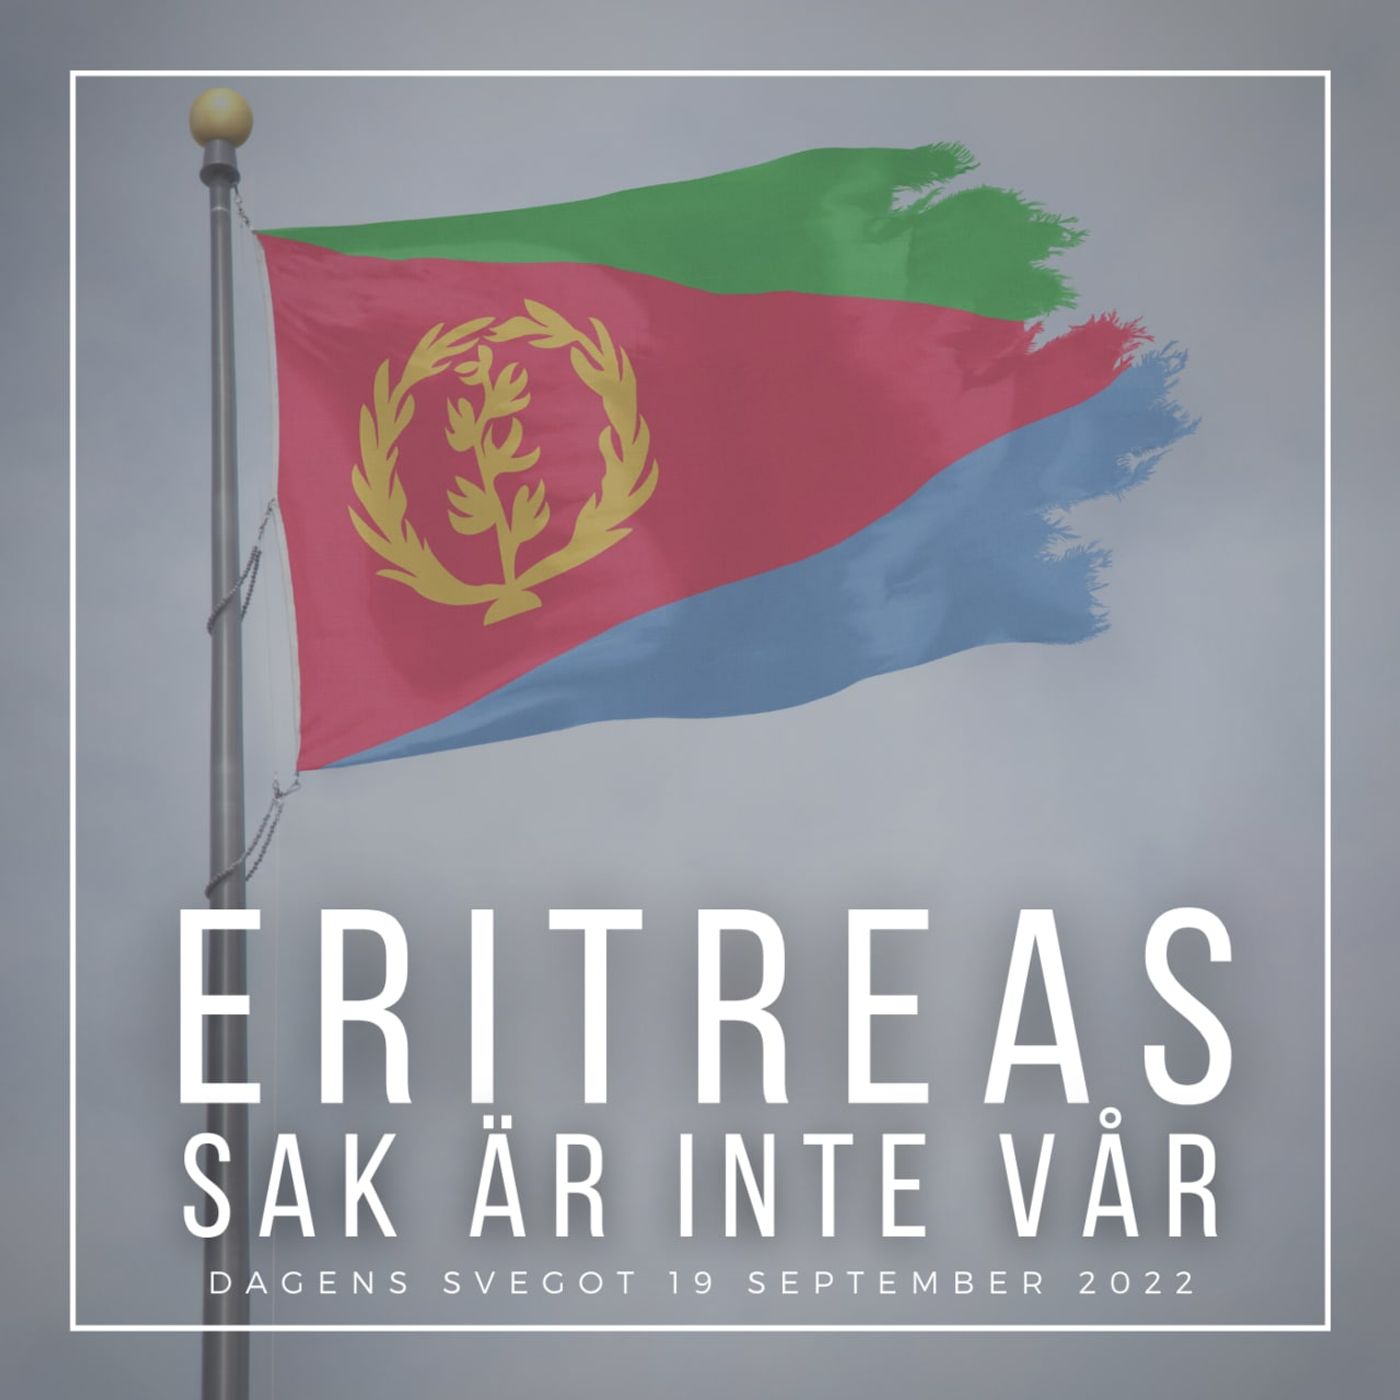 Eritreas sak är inte vår